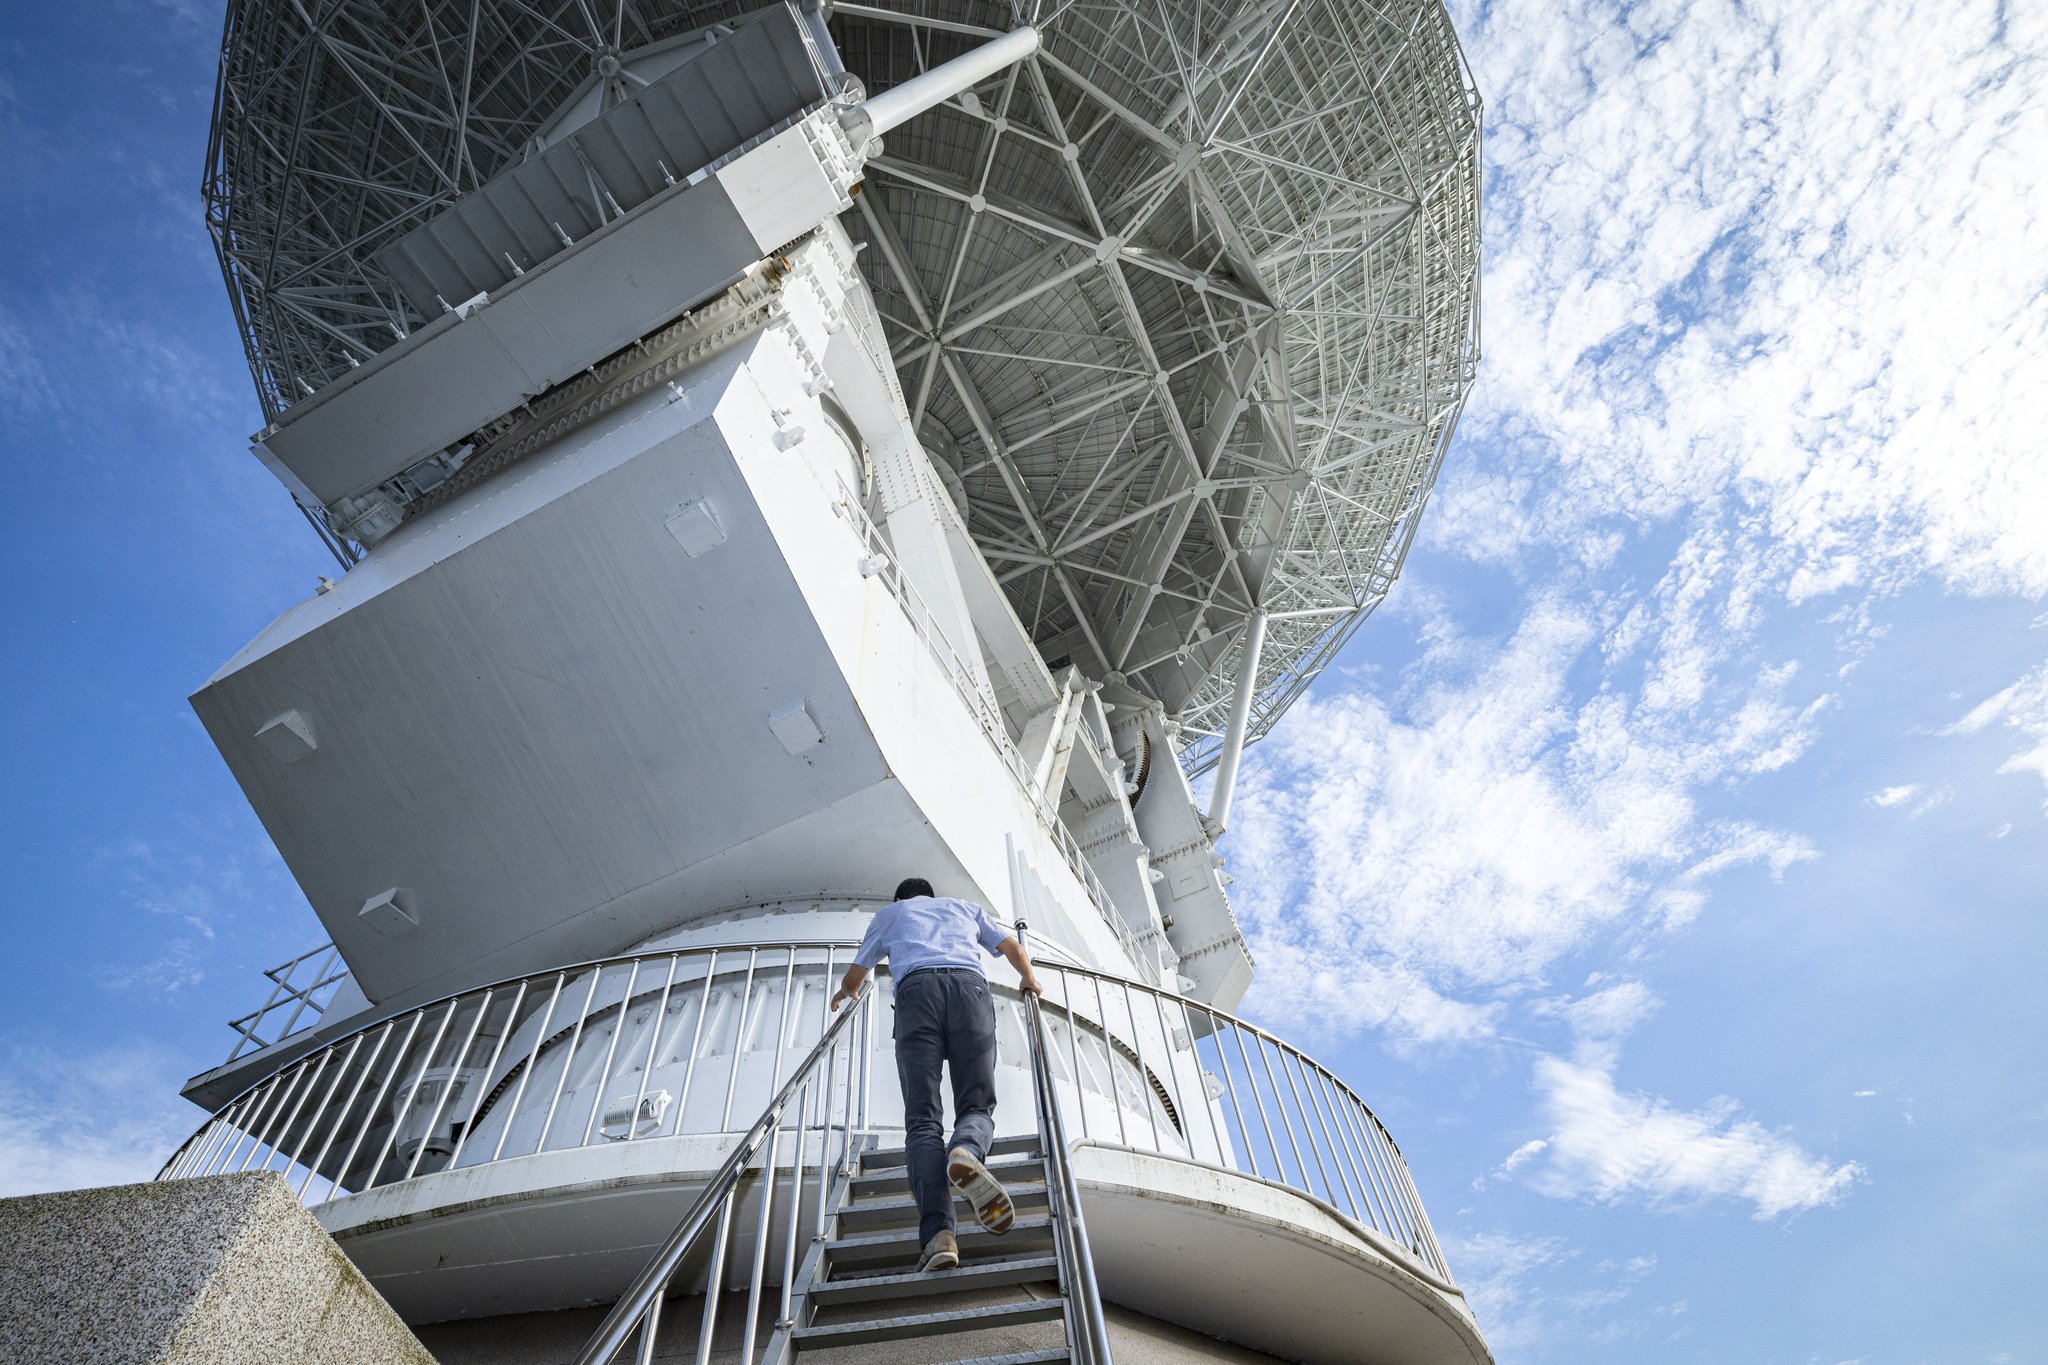 Deok-jong Park, o assistente permanente, sobe pelas escadas até o topo da antena do espaço profundo.  Este pesquisador vem fazendo pesquisa de antenas há 4 anos para o Projeto Danuri.